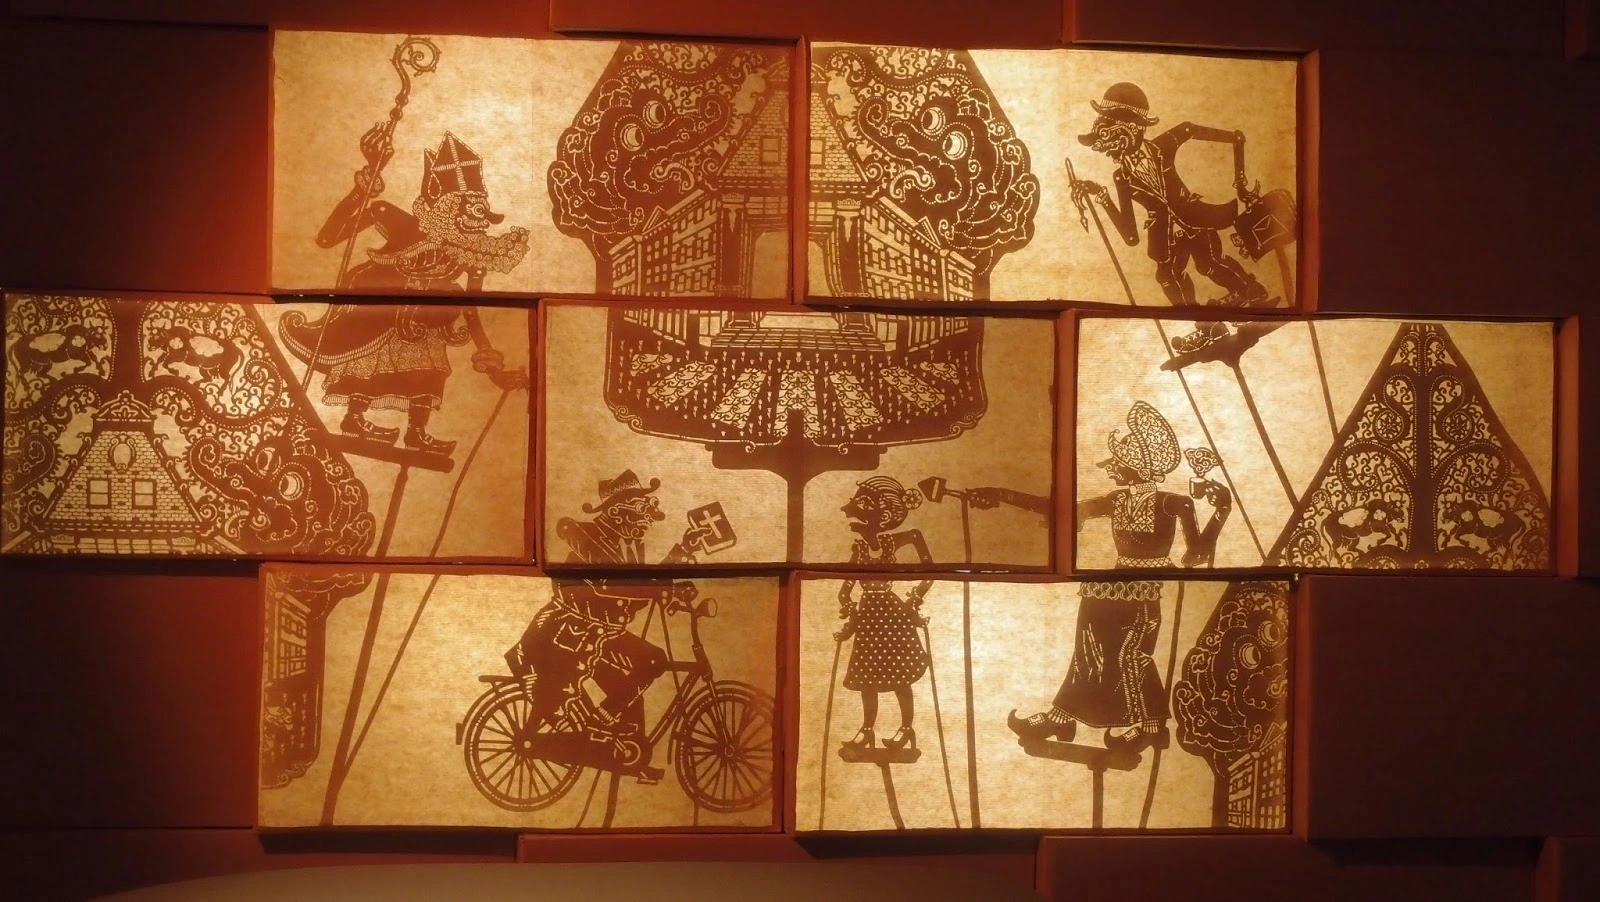 Koleksi wayang kulit yang mengesankan di Museum Wayang Jakarta.